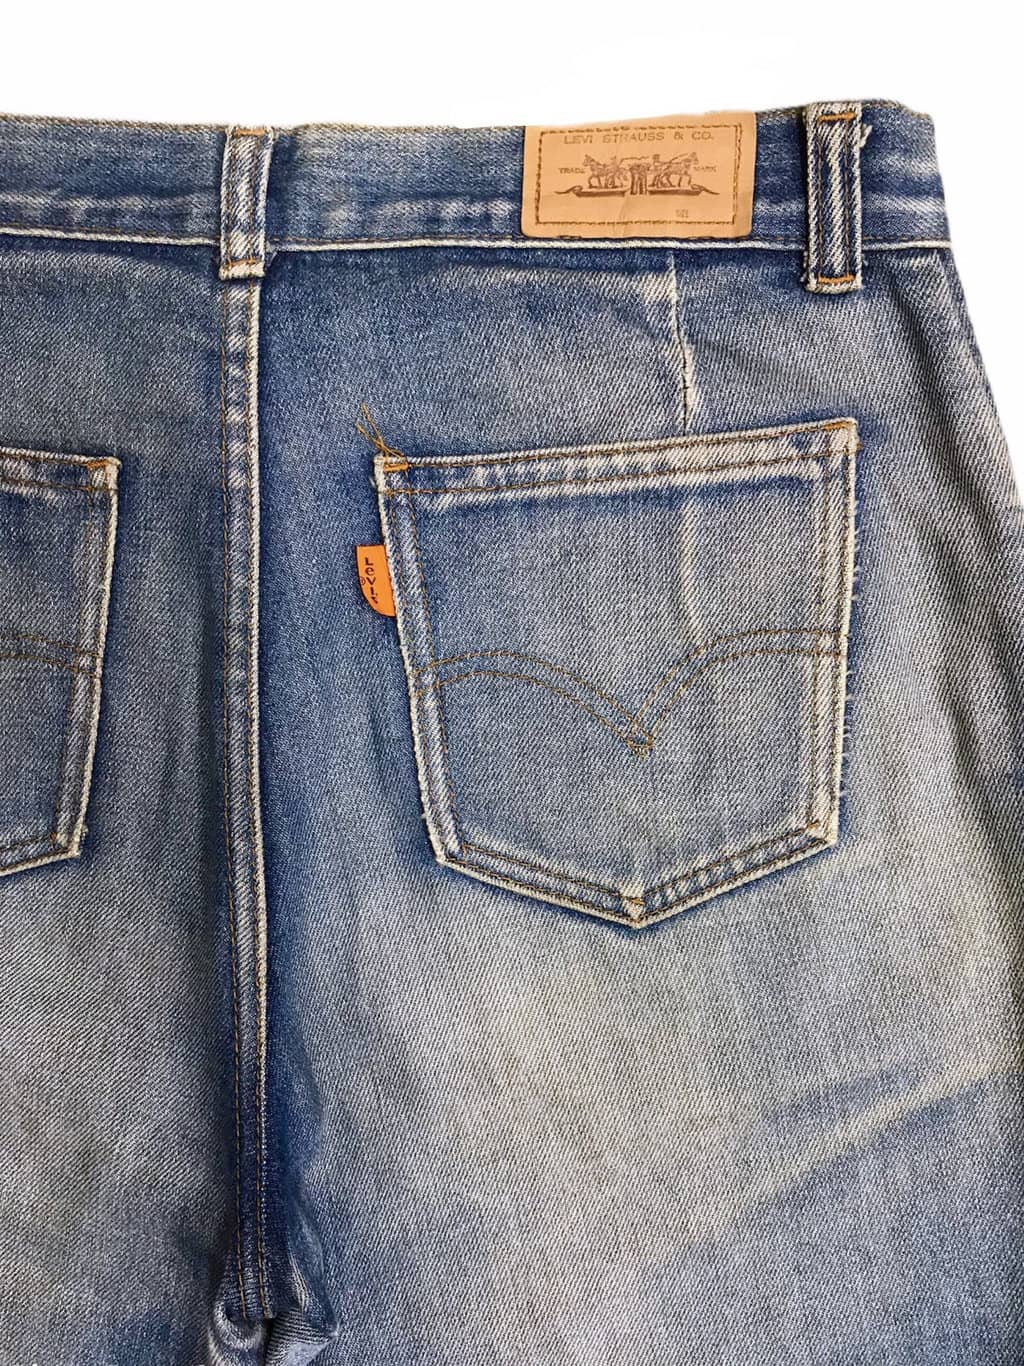 levi's orange tab vintage jeans